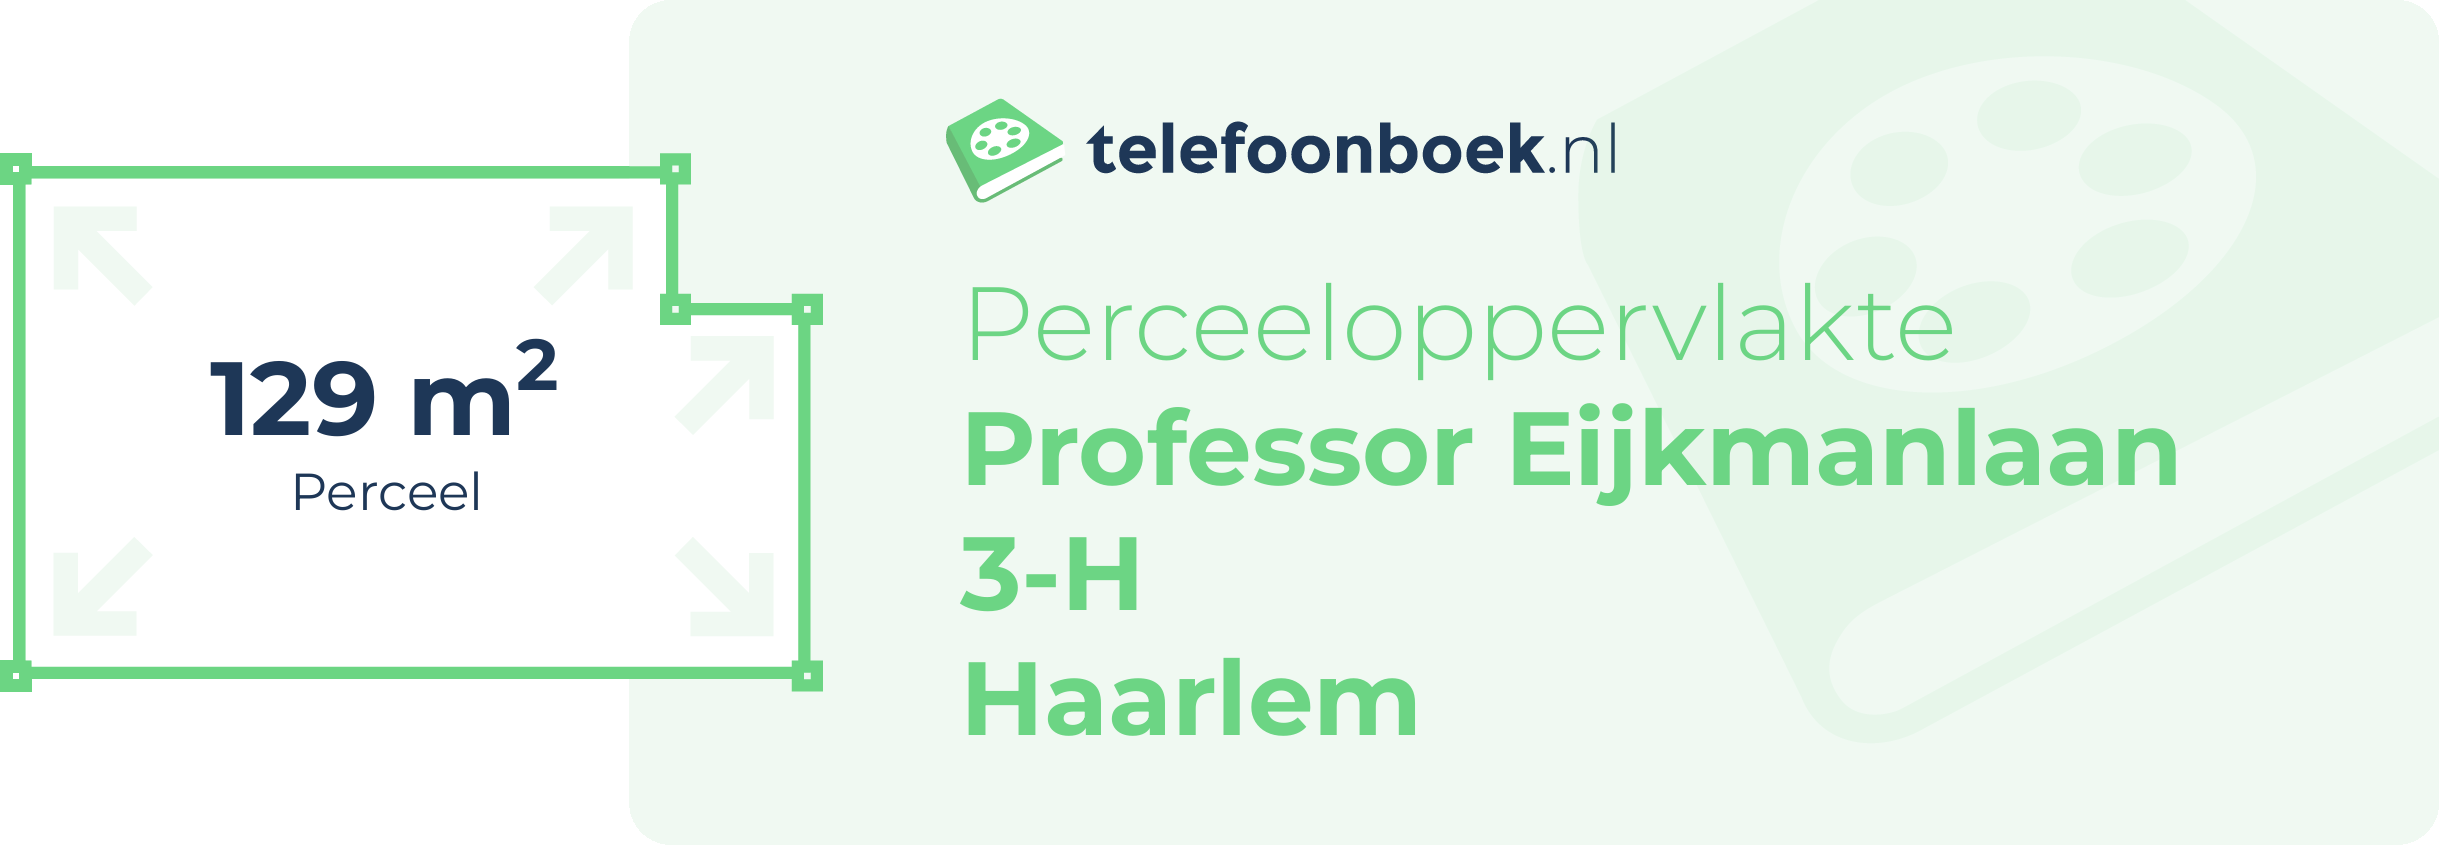 Perceeloppervlakte Professor Eijkmanlaan 3-H Haarlem